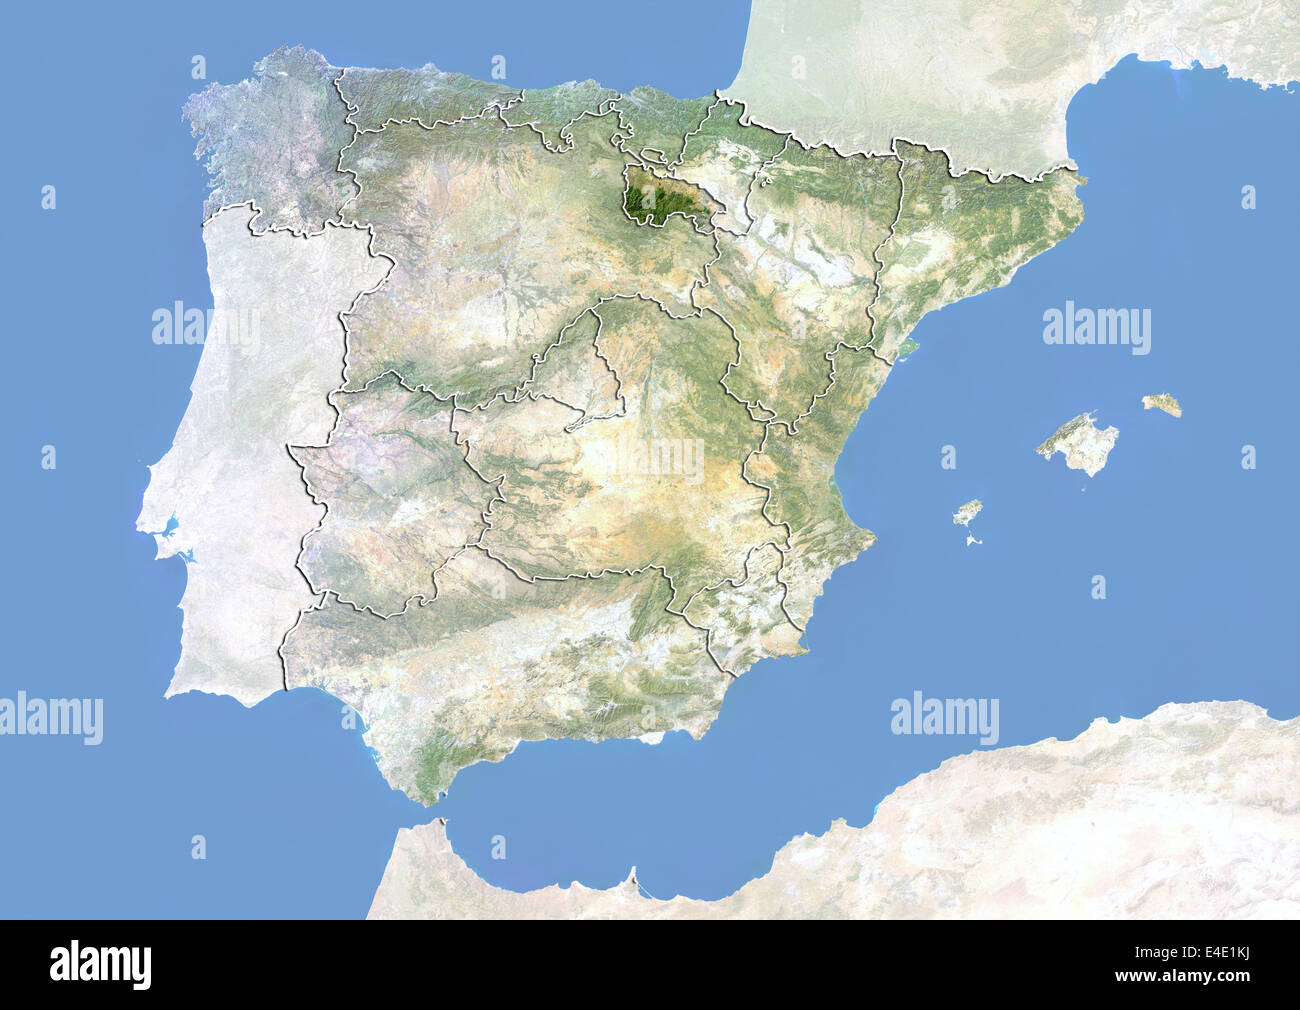 L'Espagne et la région de La Rioja, image satellite avec effet de choc Banque D'Images